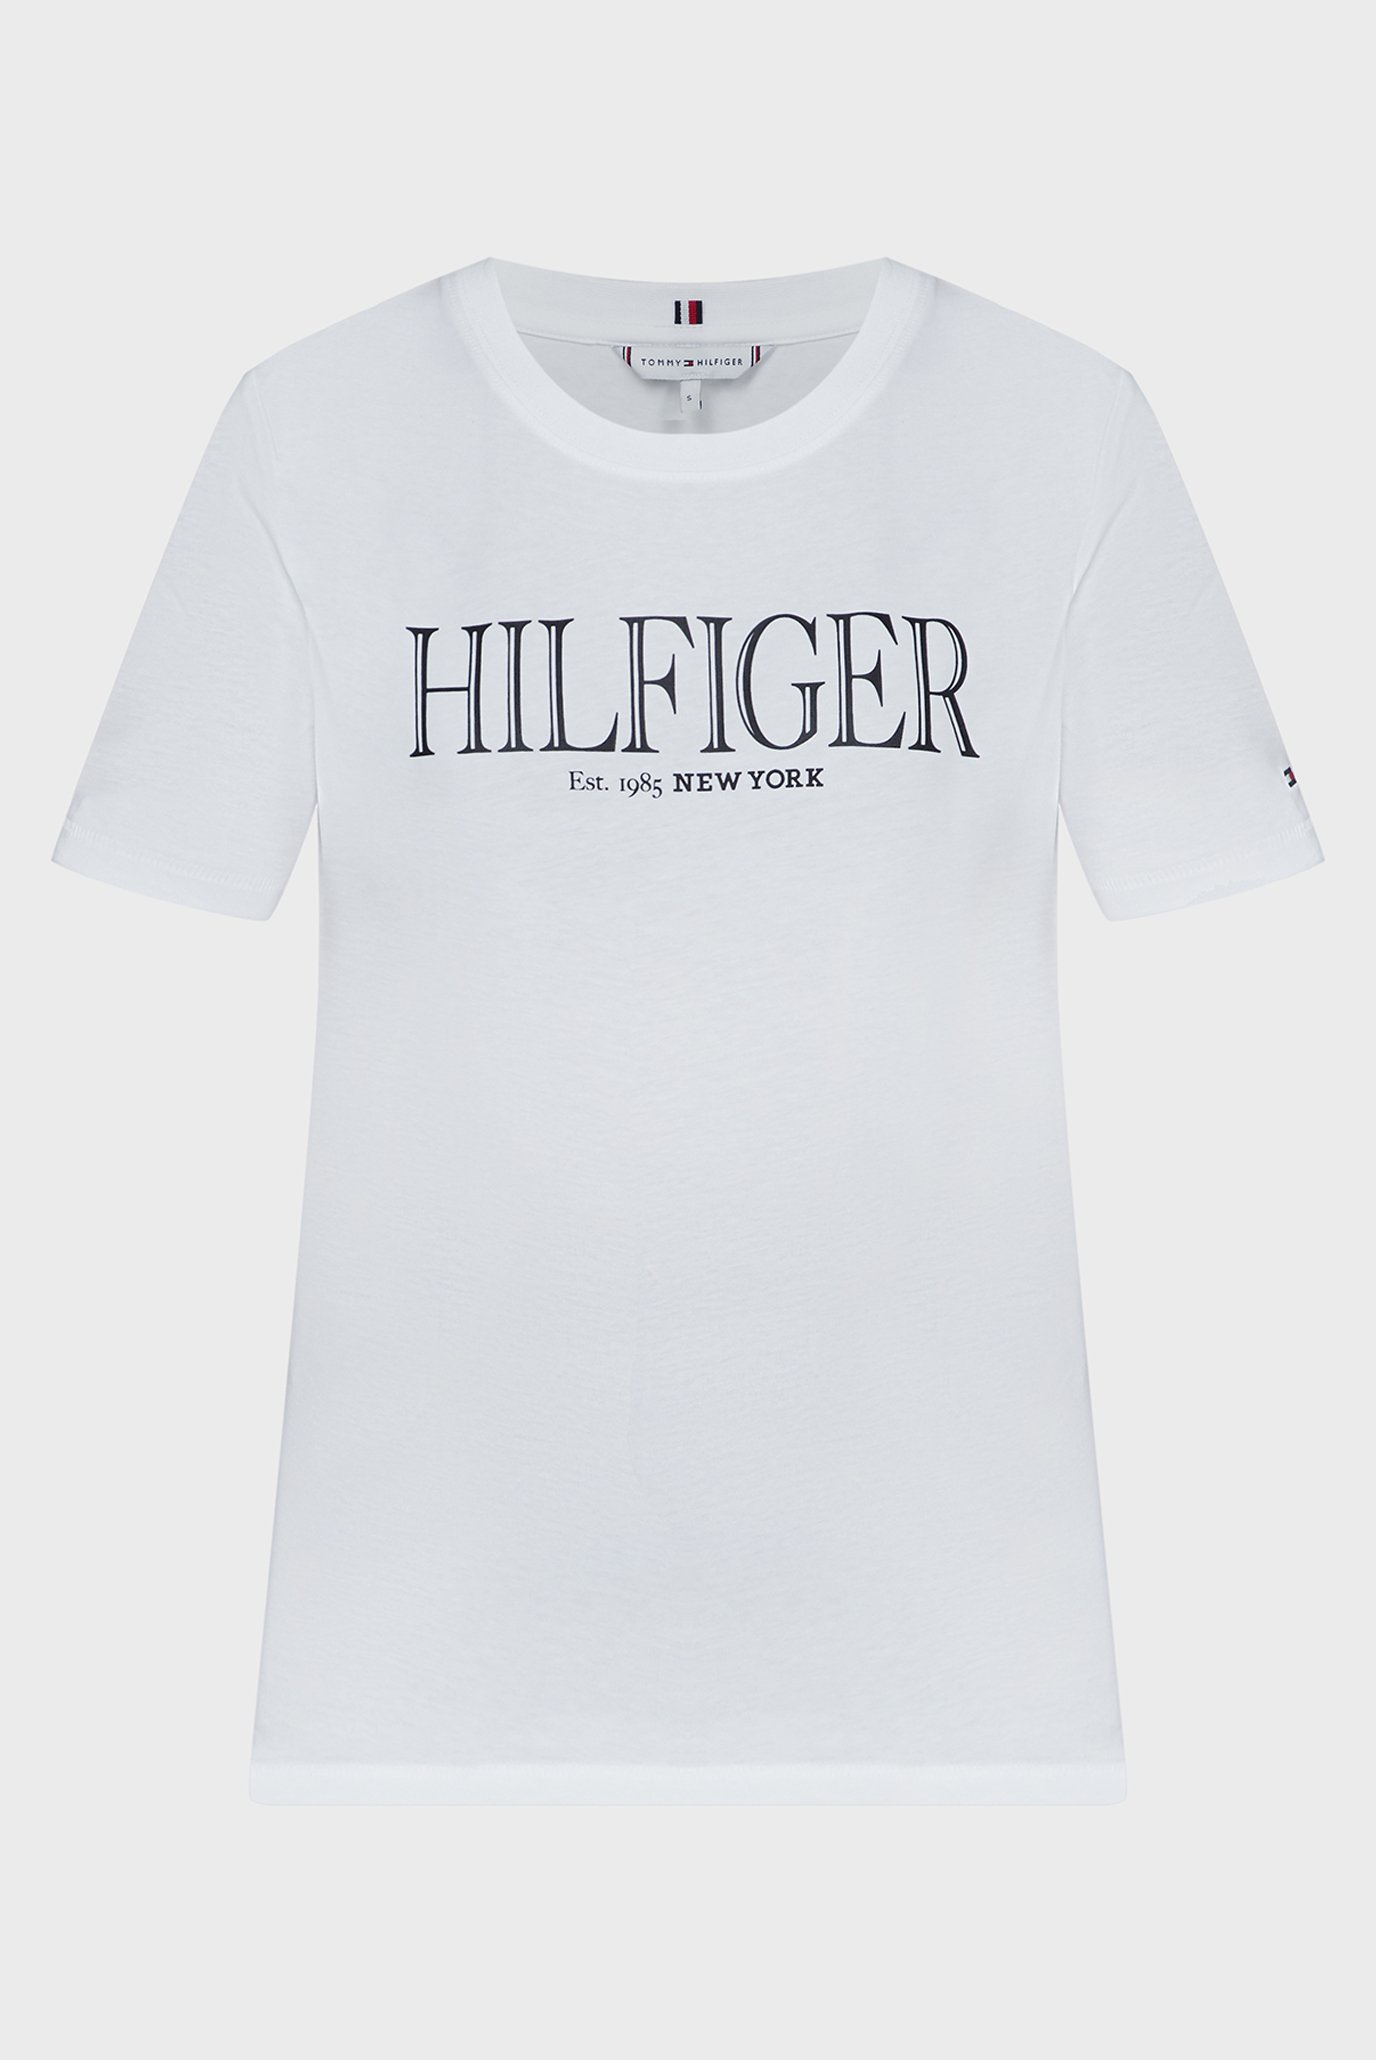 Жіноча біла футболка REG MDN HILFIGER C-NK SS 1